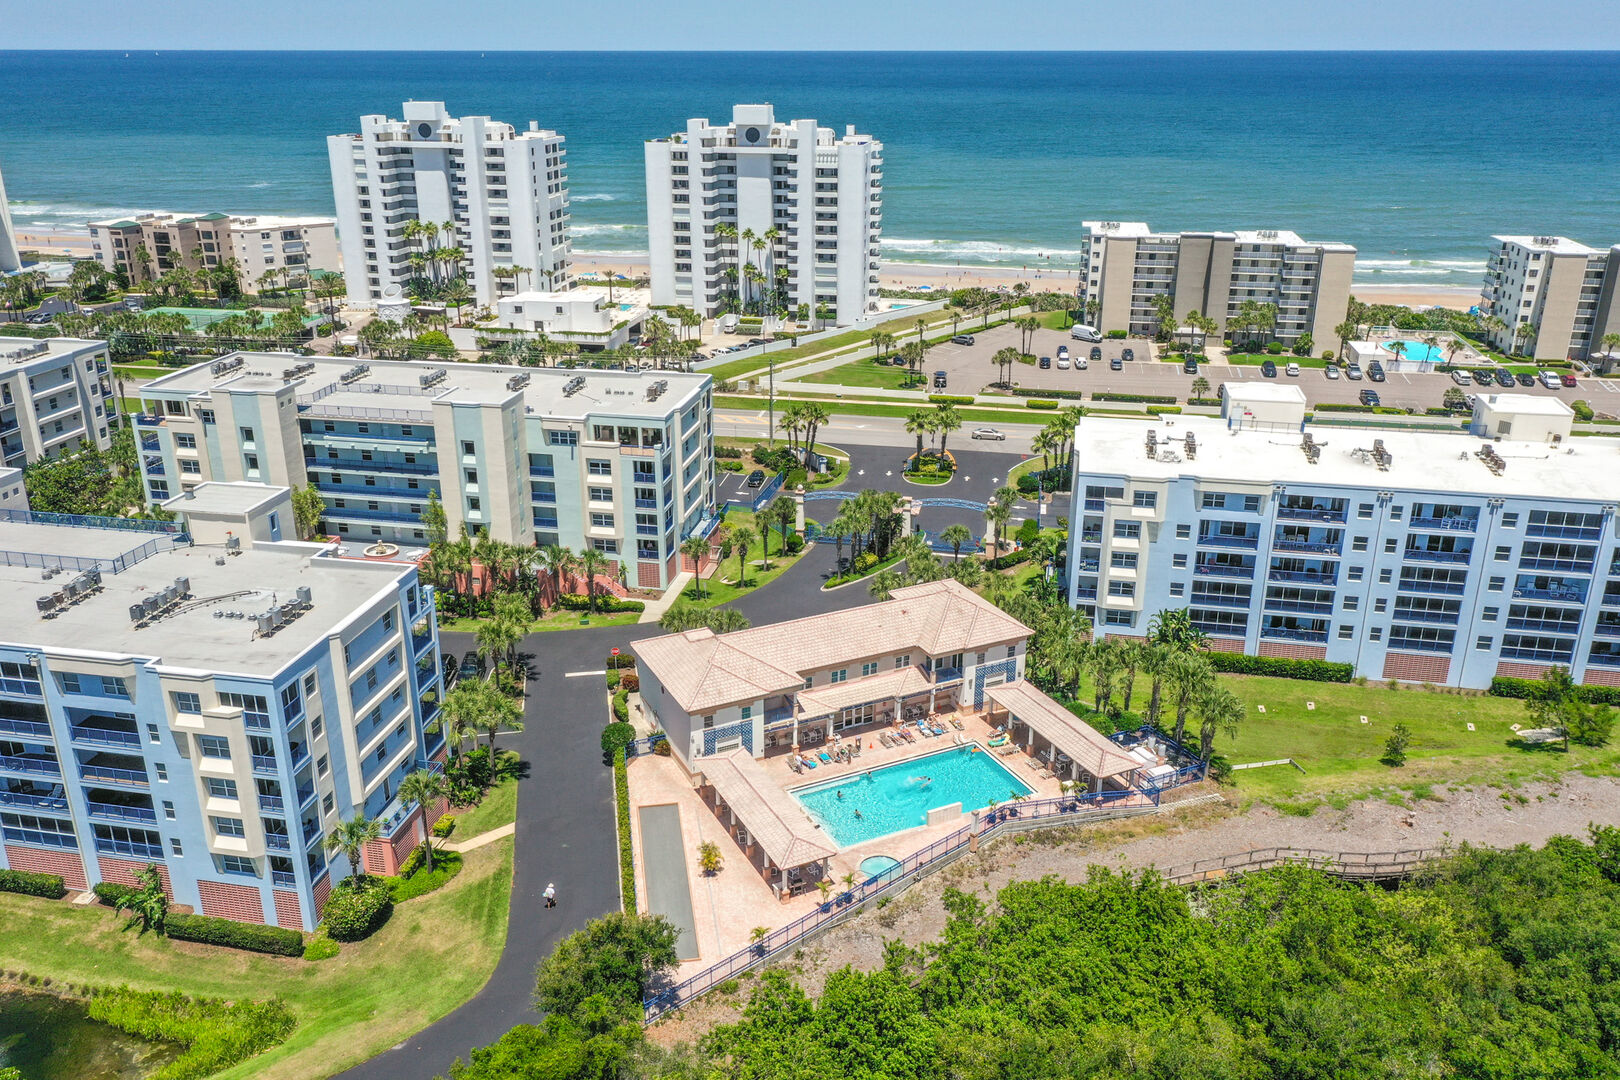 New Smyrna Beach Florida Vacation Rentals   Find Rentals